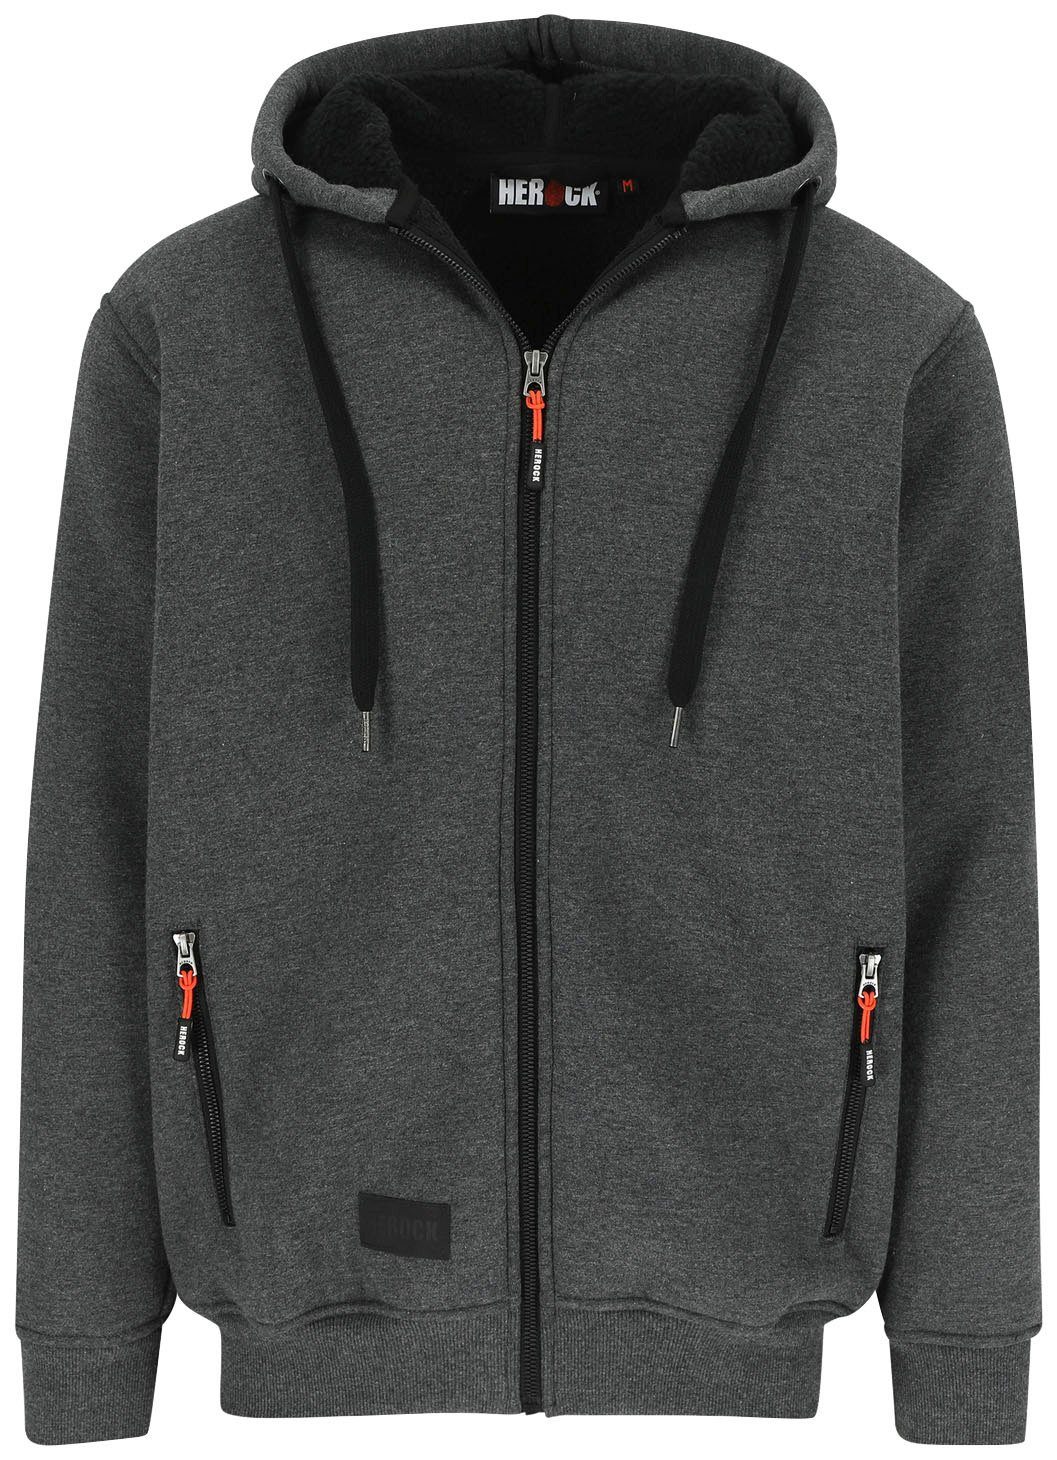 Herock Sweater OTIS Mit Kapuze, langem Reißverschluβ, HEROCK®-Aufdruck, warm und angenehm grau